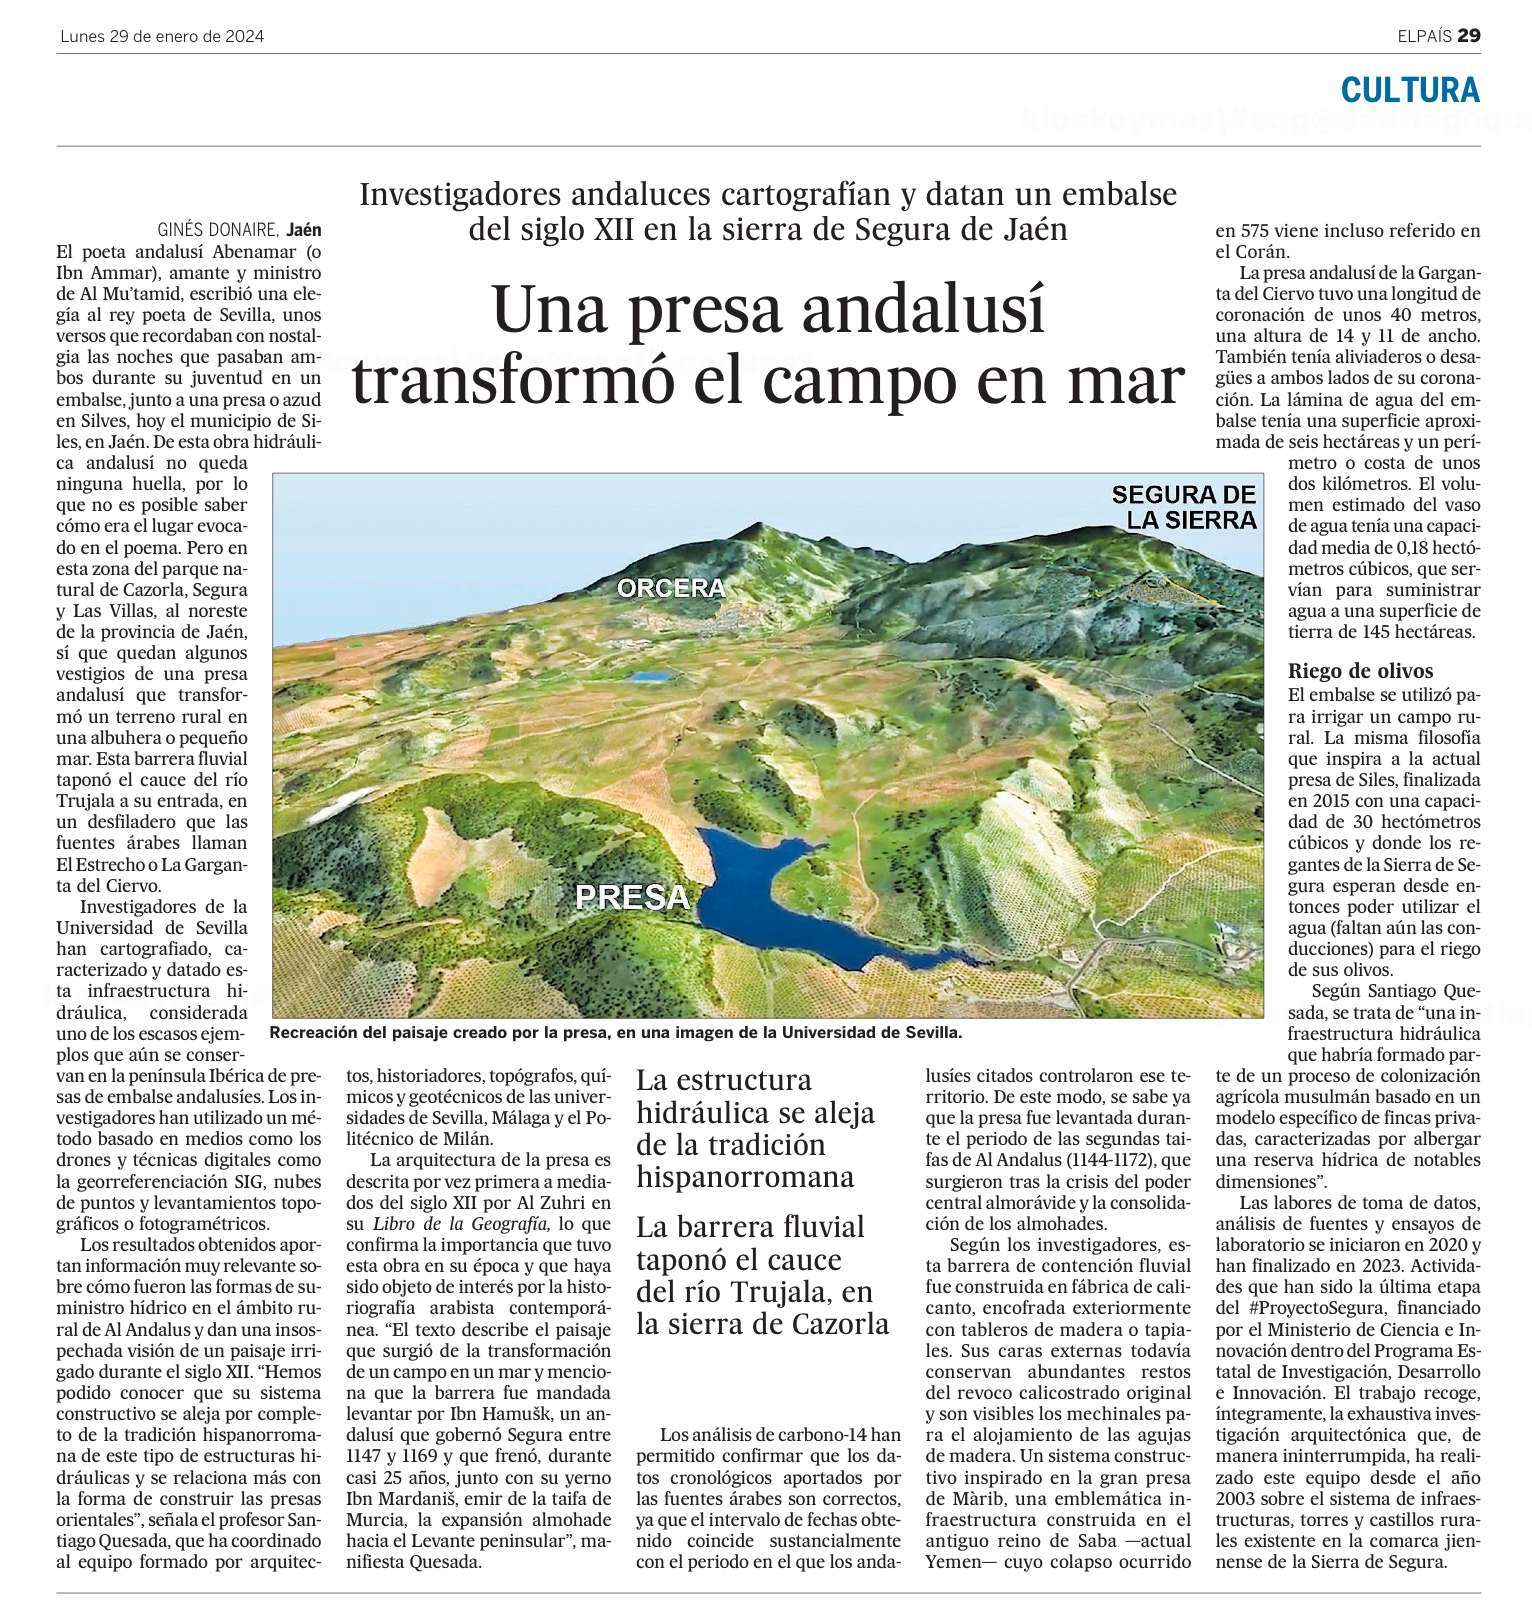 Diario El País_29 enero 2024_Embalse Albuhera y presa Garganta del Ciervo